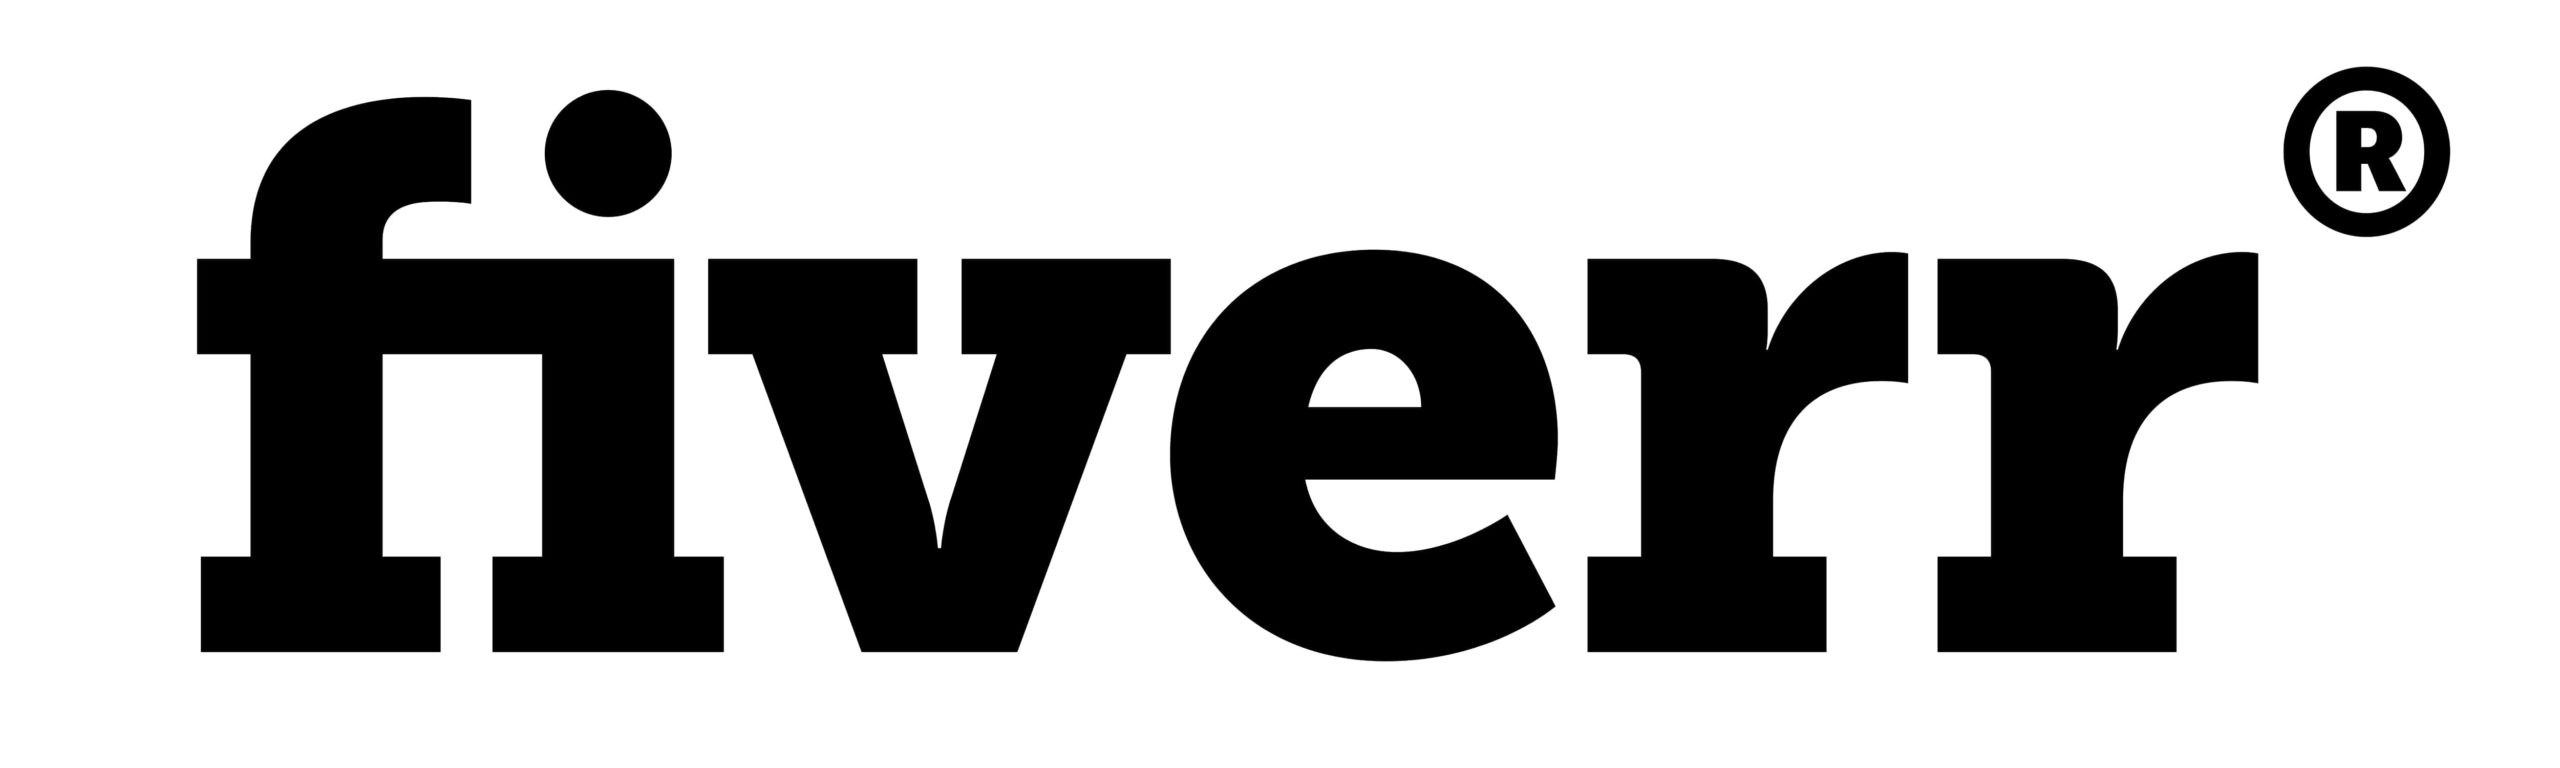 Download Fiverr New Logo 2020 Pics